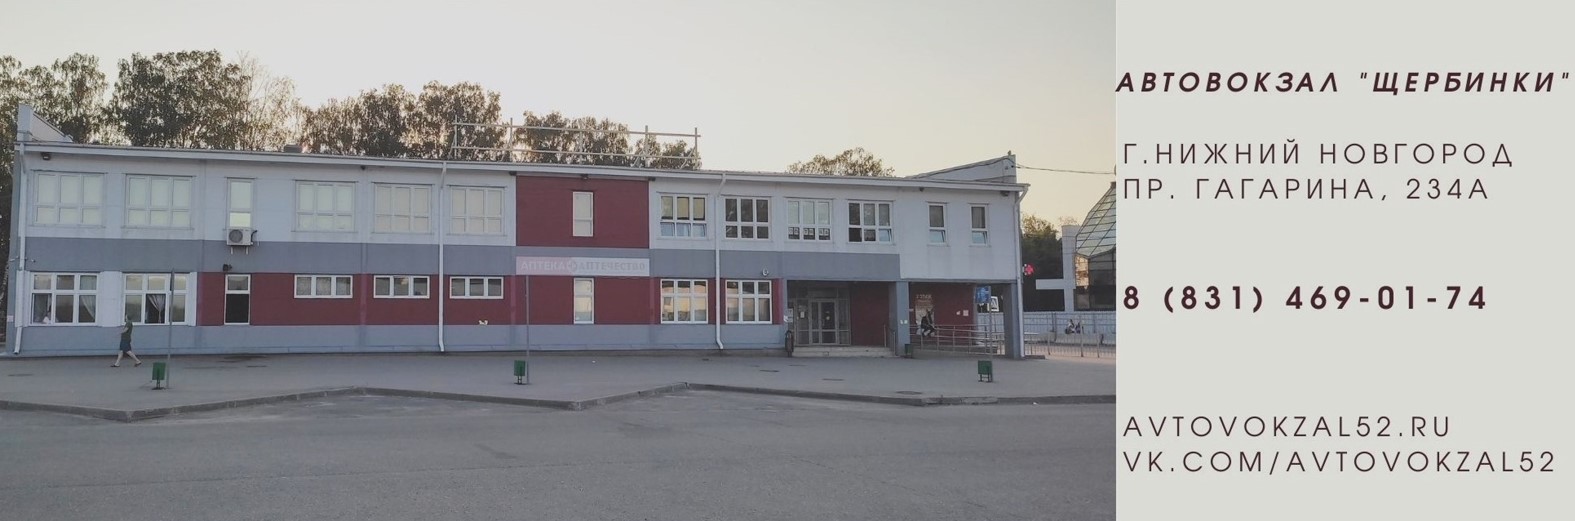 Автостанция щербинки в Нижнем Новгороде